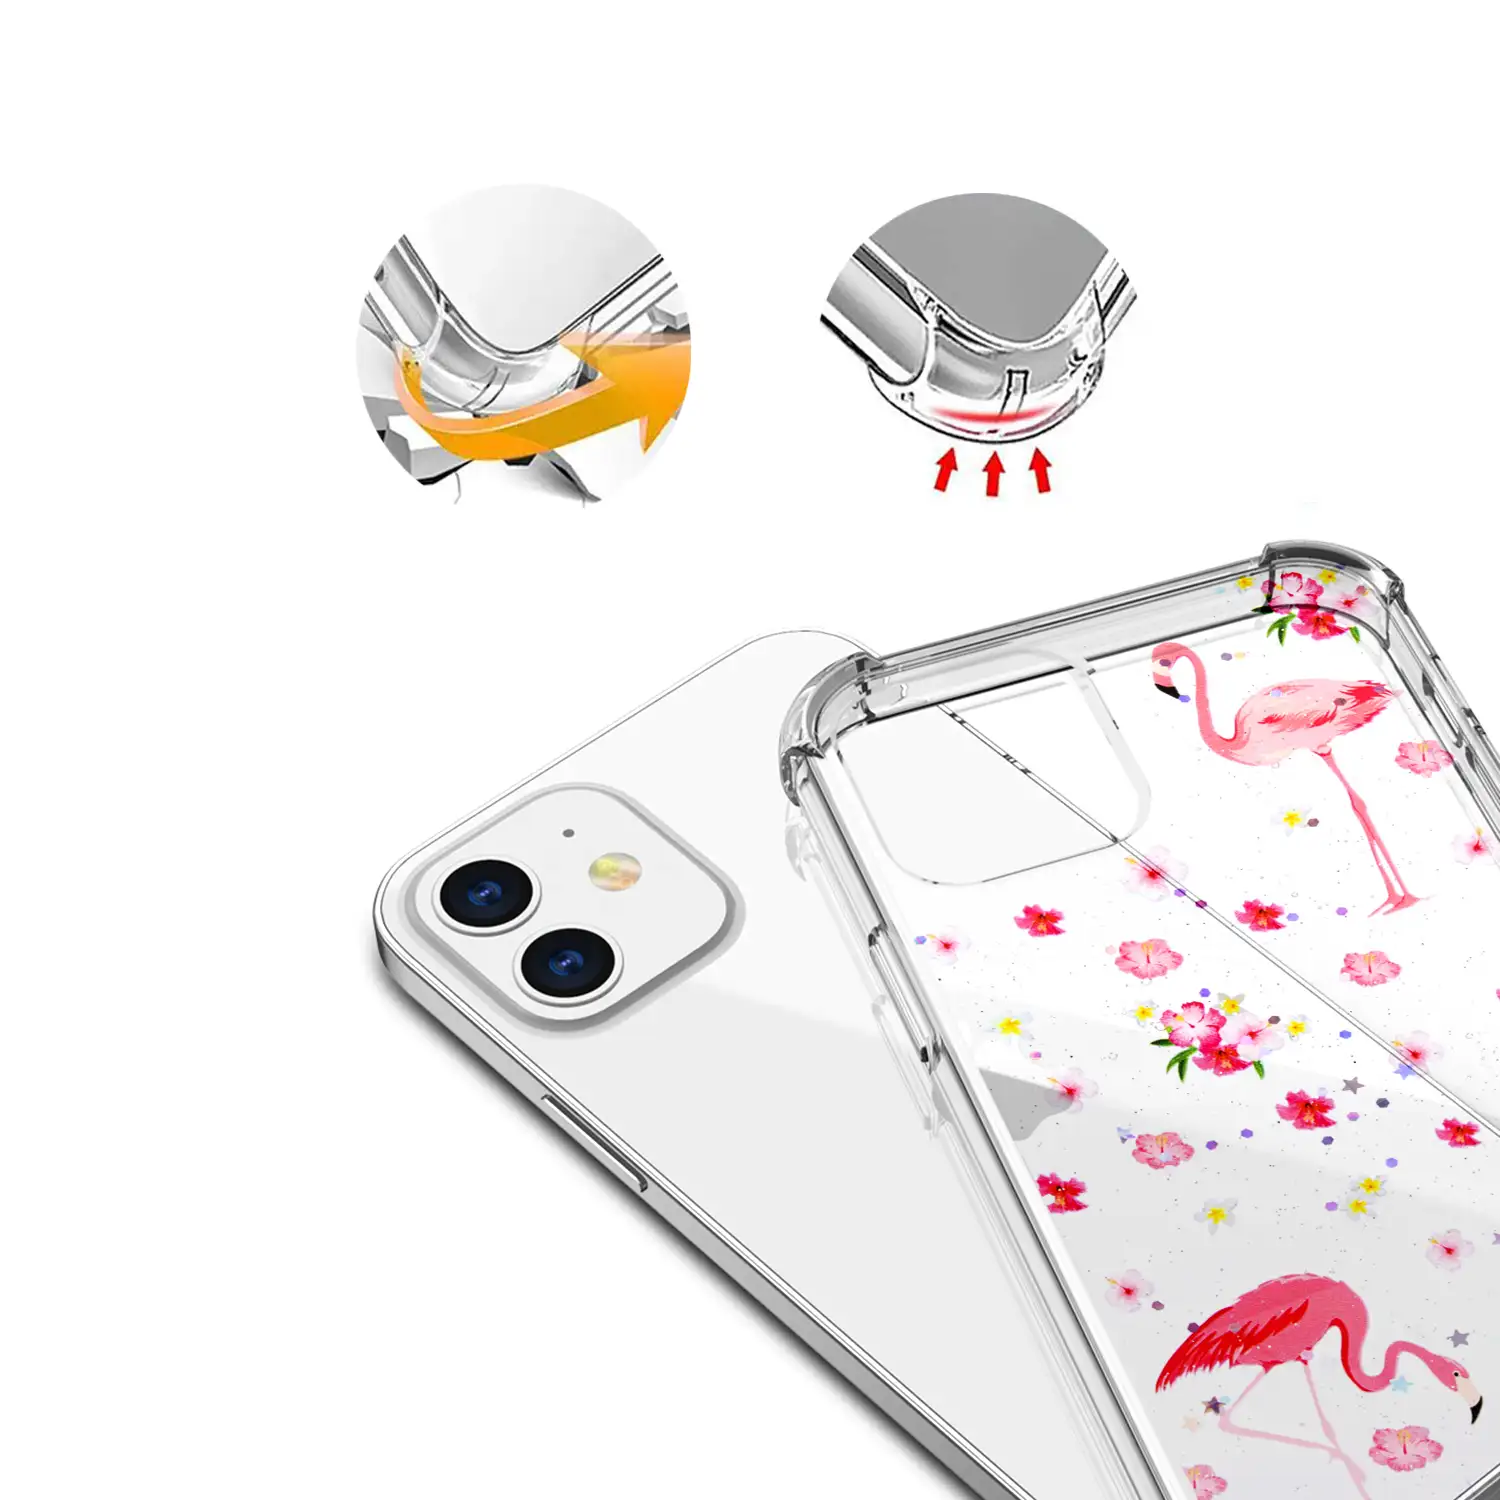 Carcasa de TPU de alta protección con diseño flamencos para iPhone 12 Mini